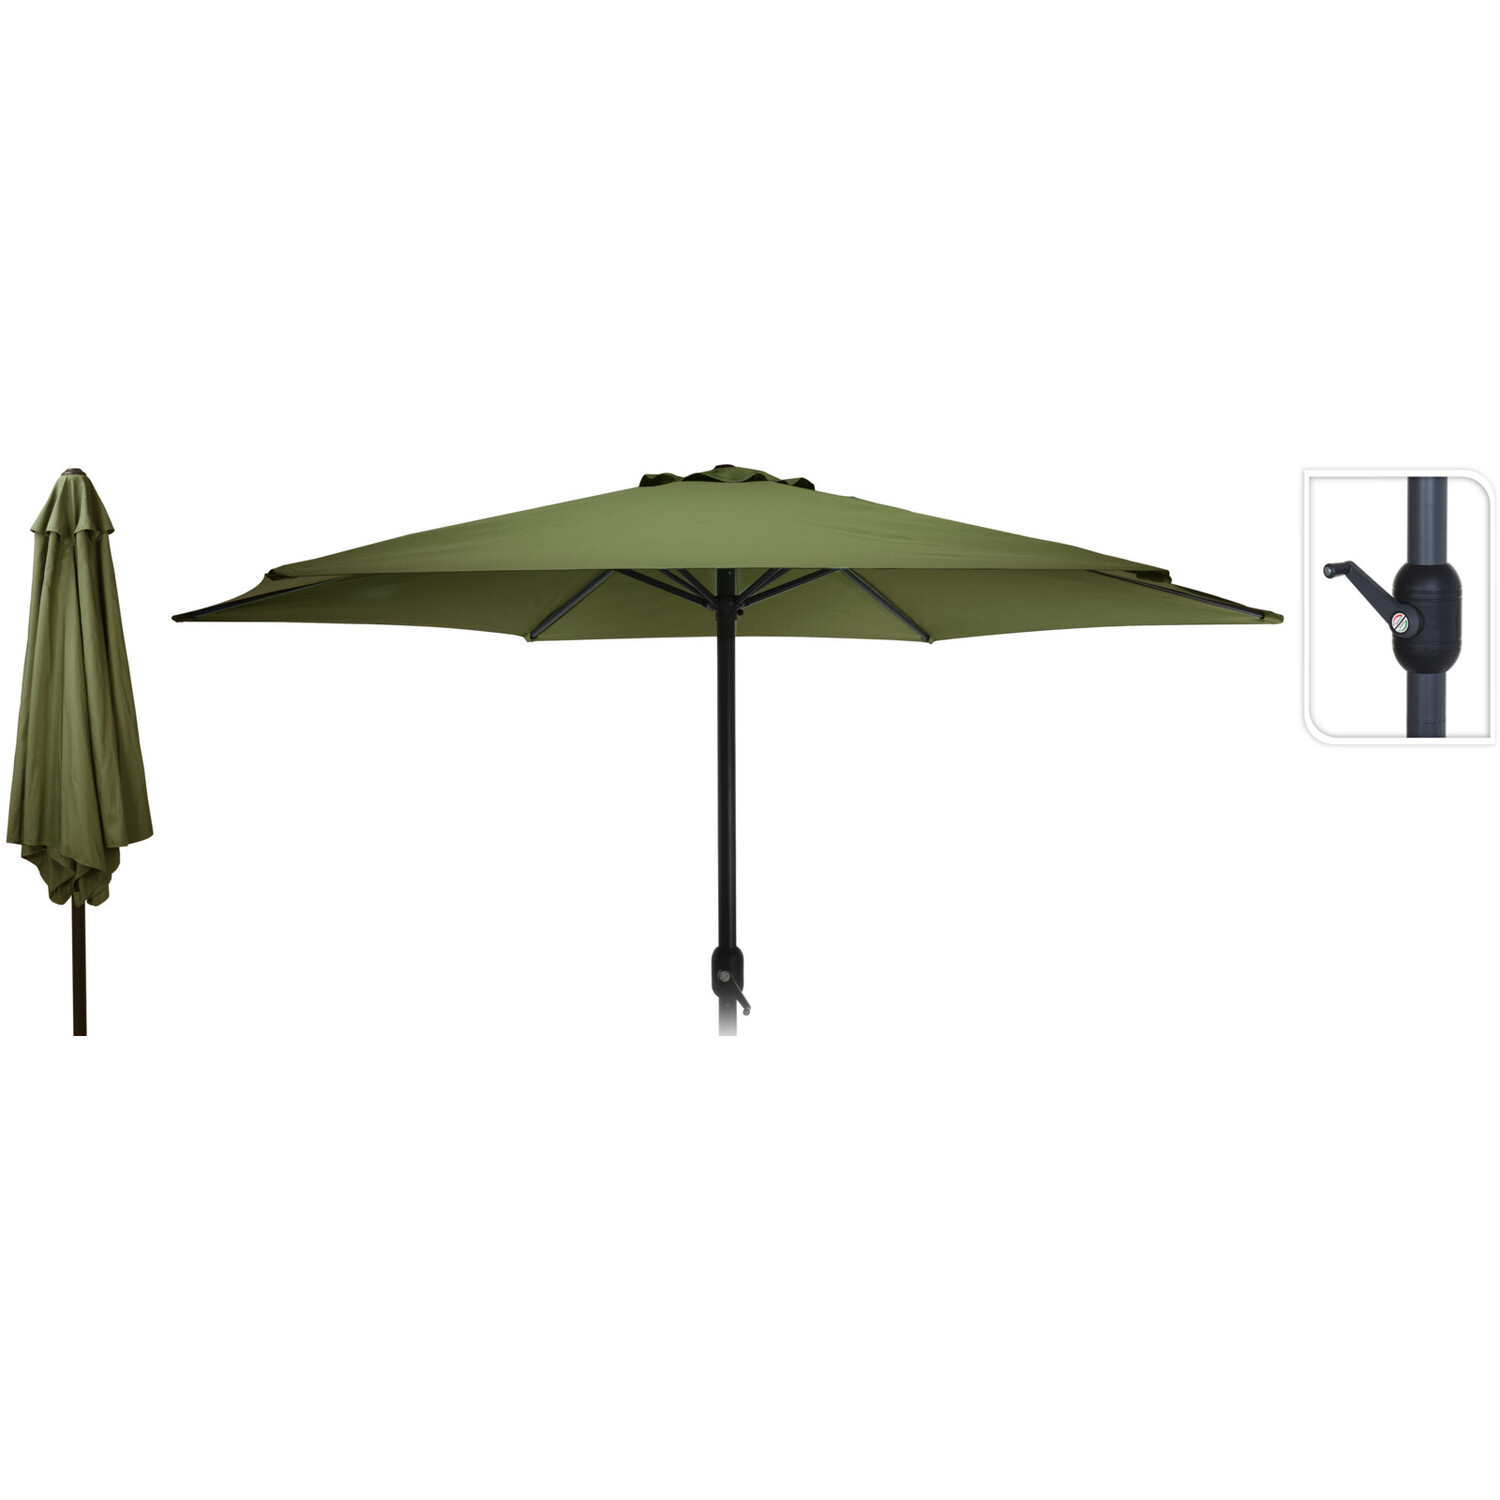 Dia Green Umbrella Parasol with Crank Handle 3m Image